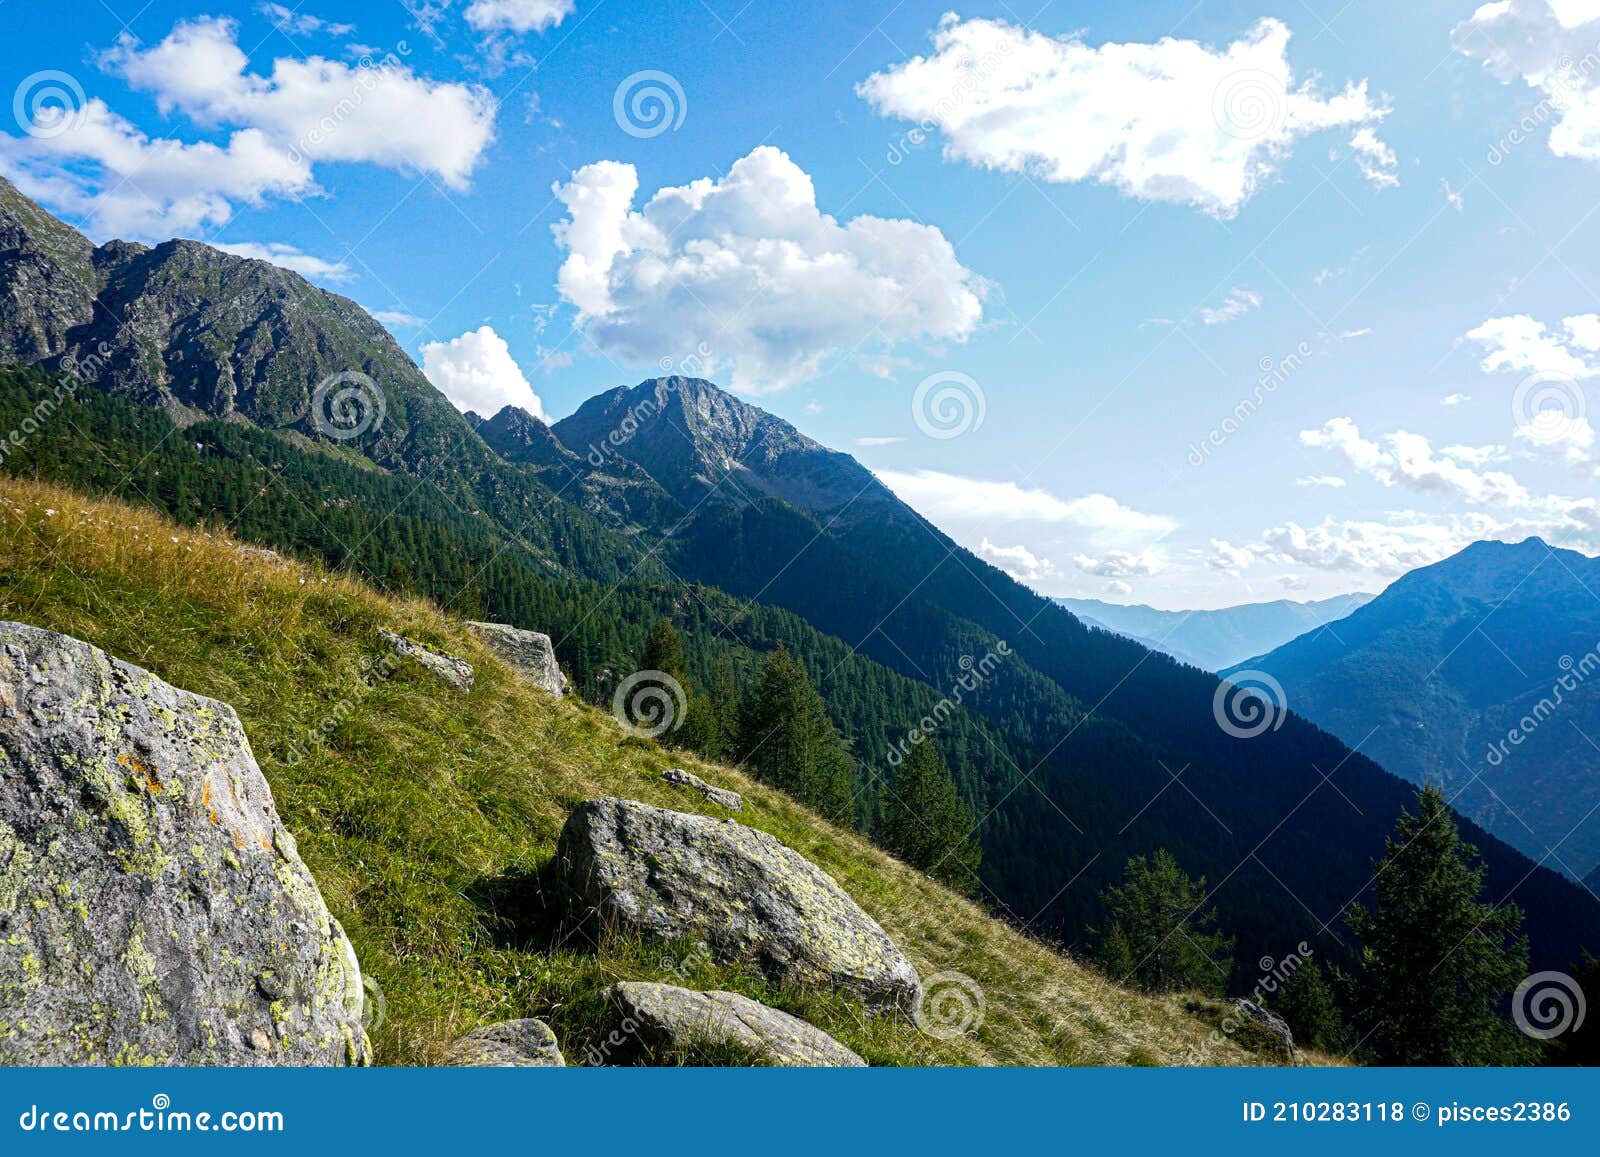 incredible landscape in the lavizzara valley, ticino